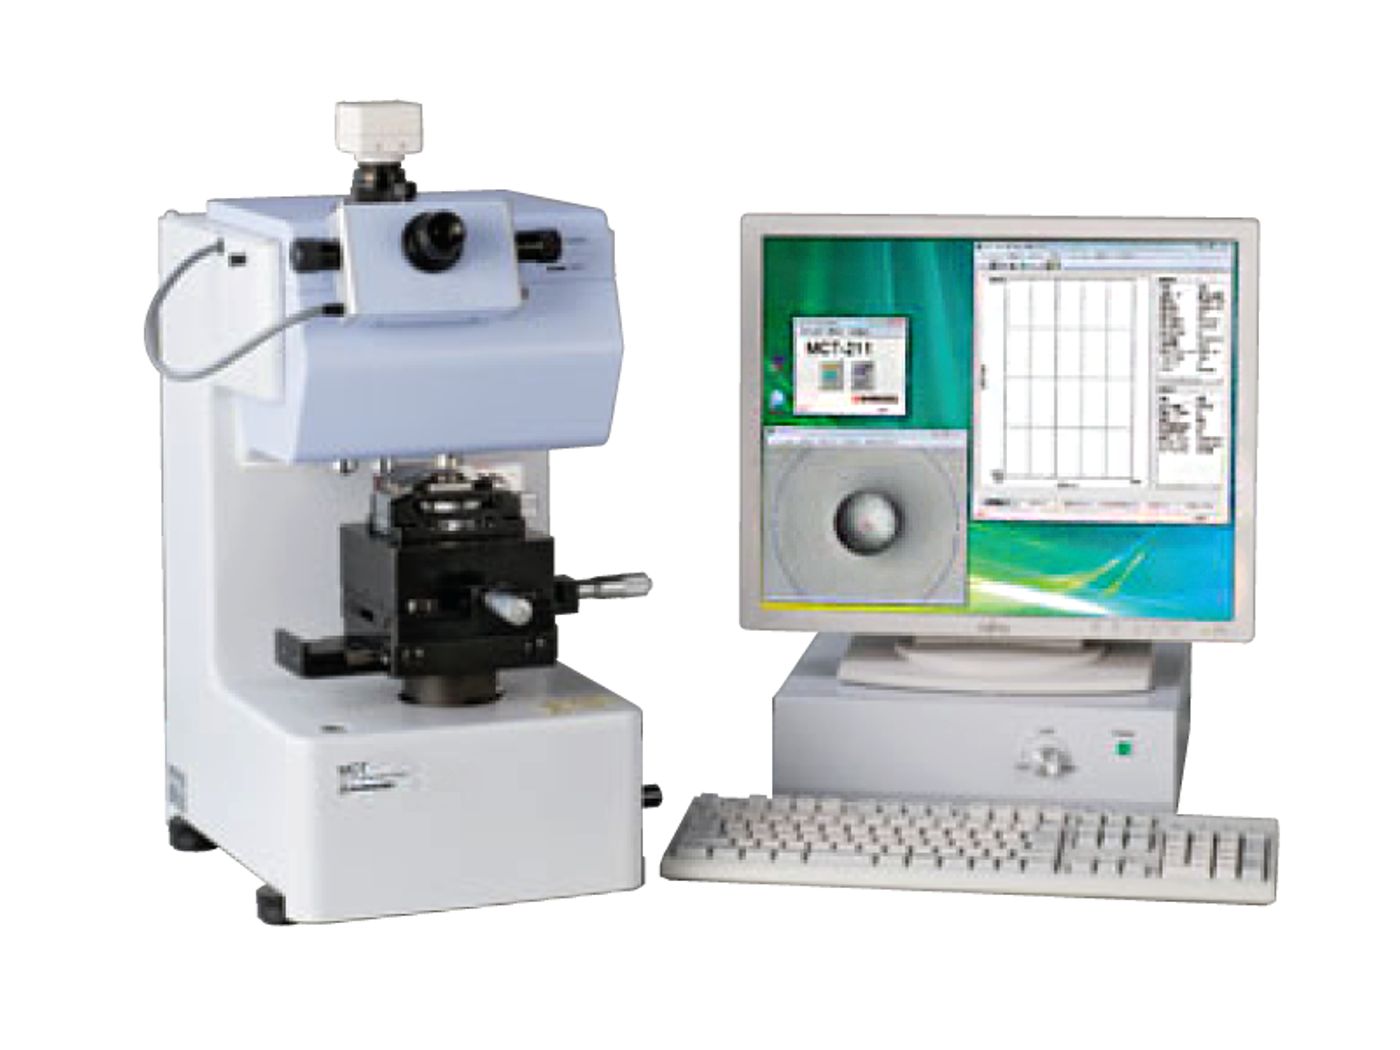 Evaluación de desgaste en filos de herramientas de corte por microcompresión en Maquinas de Ensayos